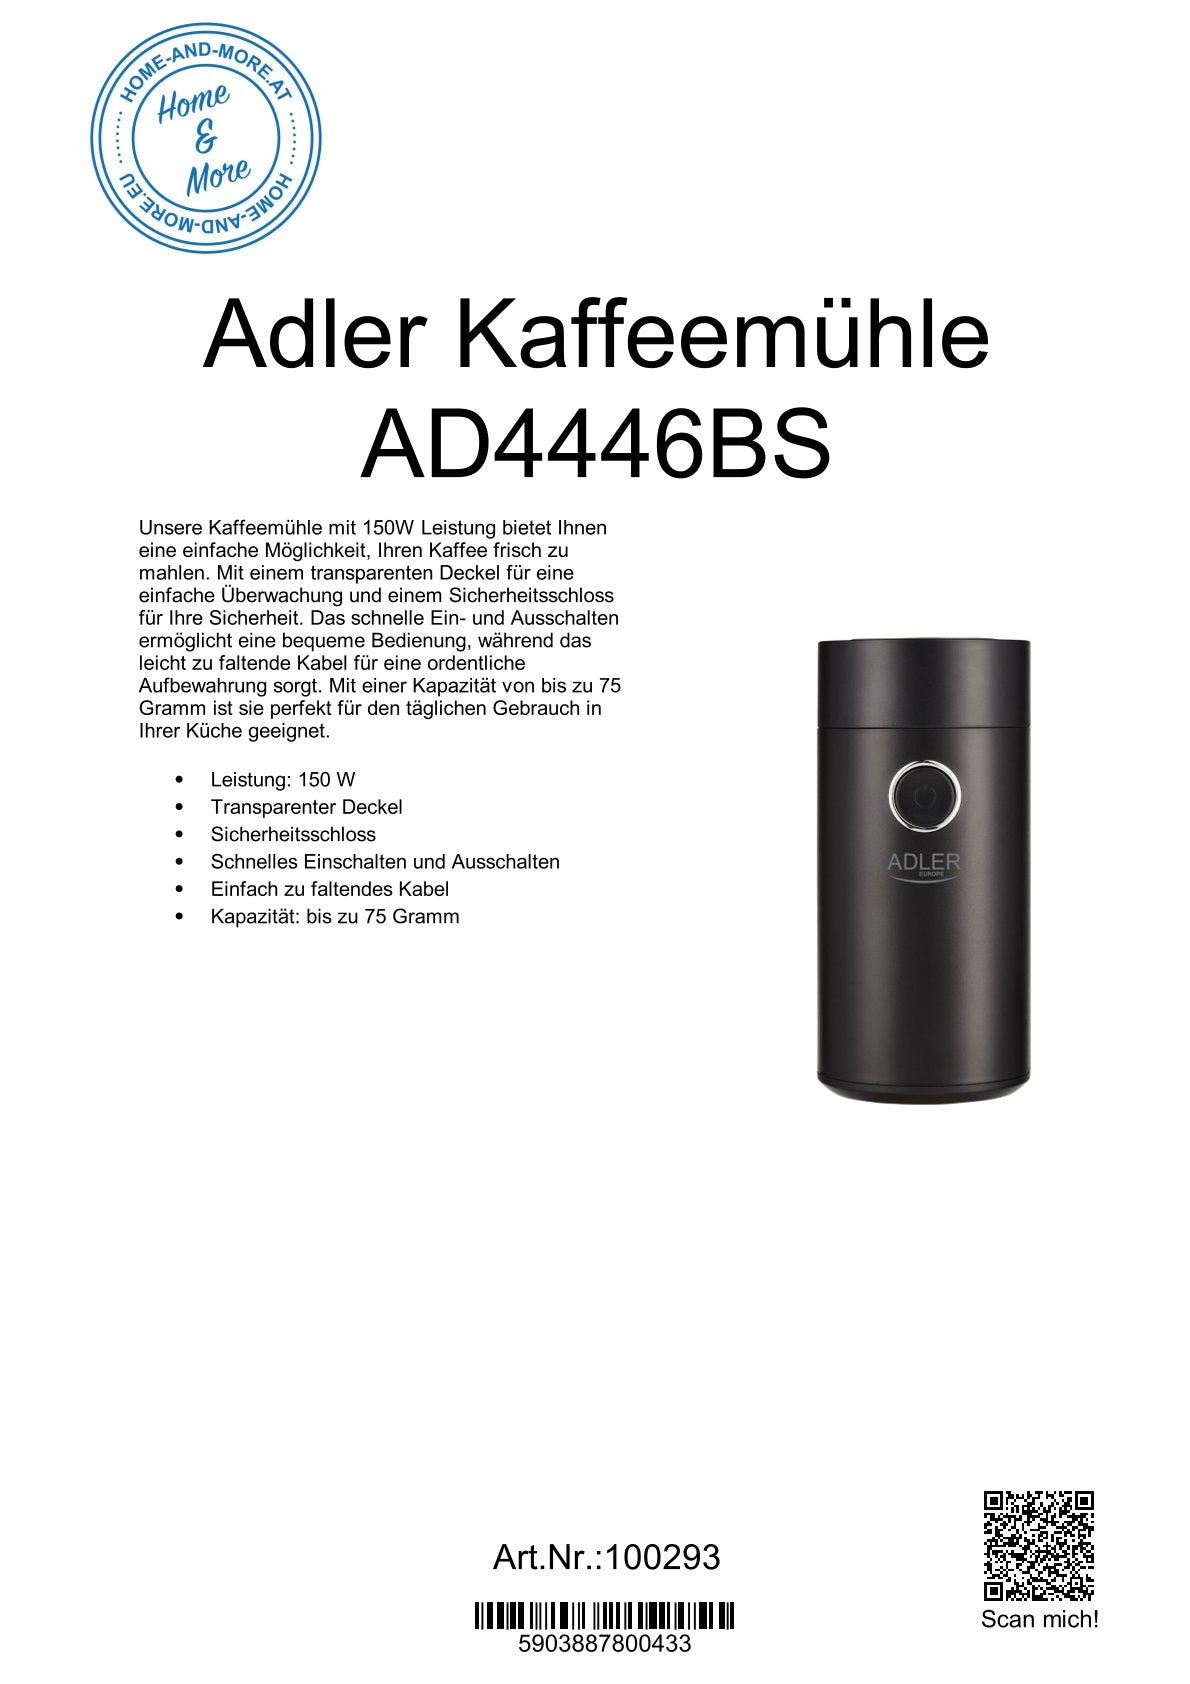 Adler Kaffeemühle AD4446BS